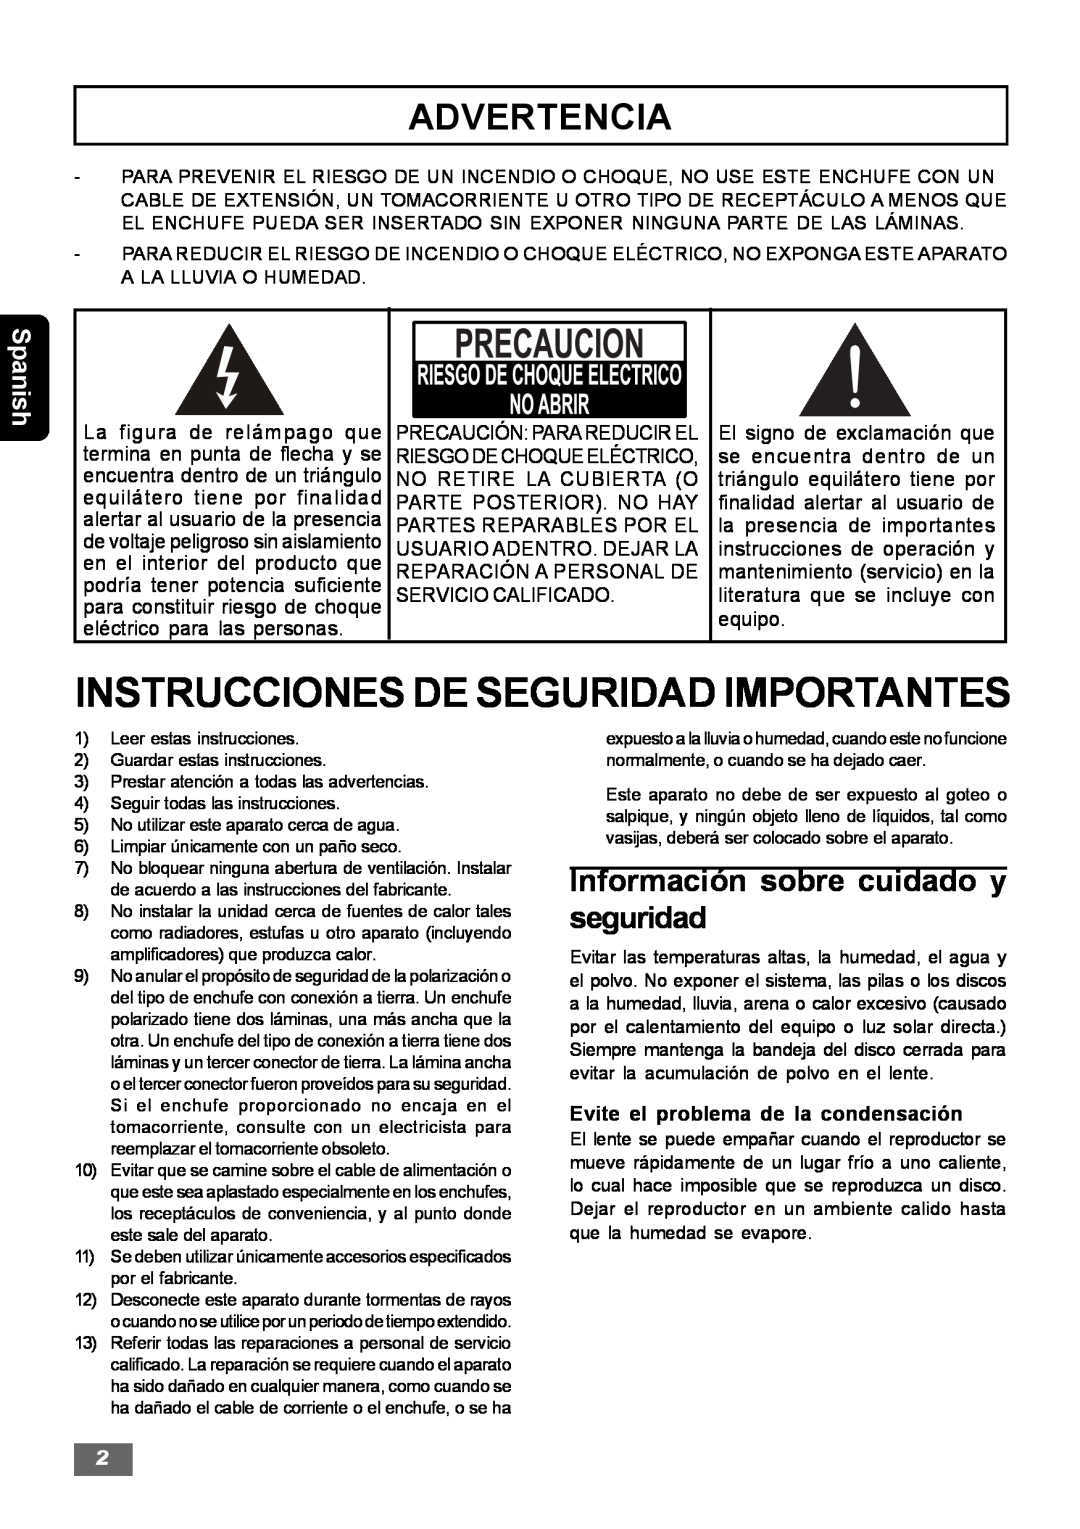 Insignia IS-HTIB102731 Instrucciones De Seguridad Importantes, Advertencia, Información sobre cuidado y seguridad, Spanish 